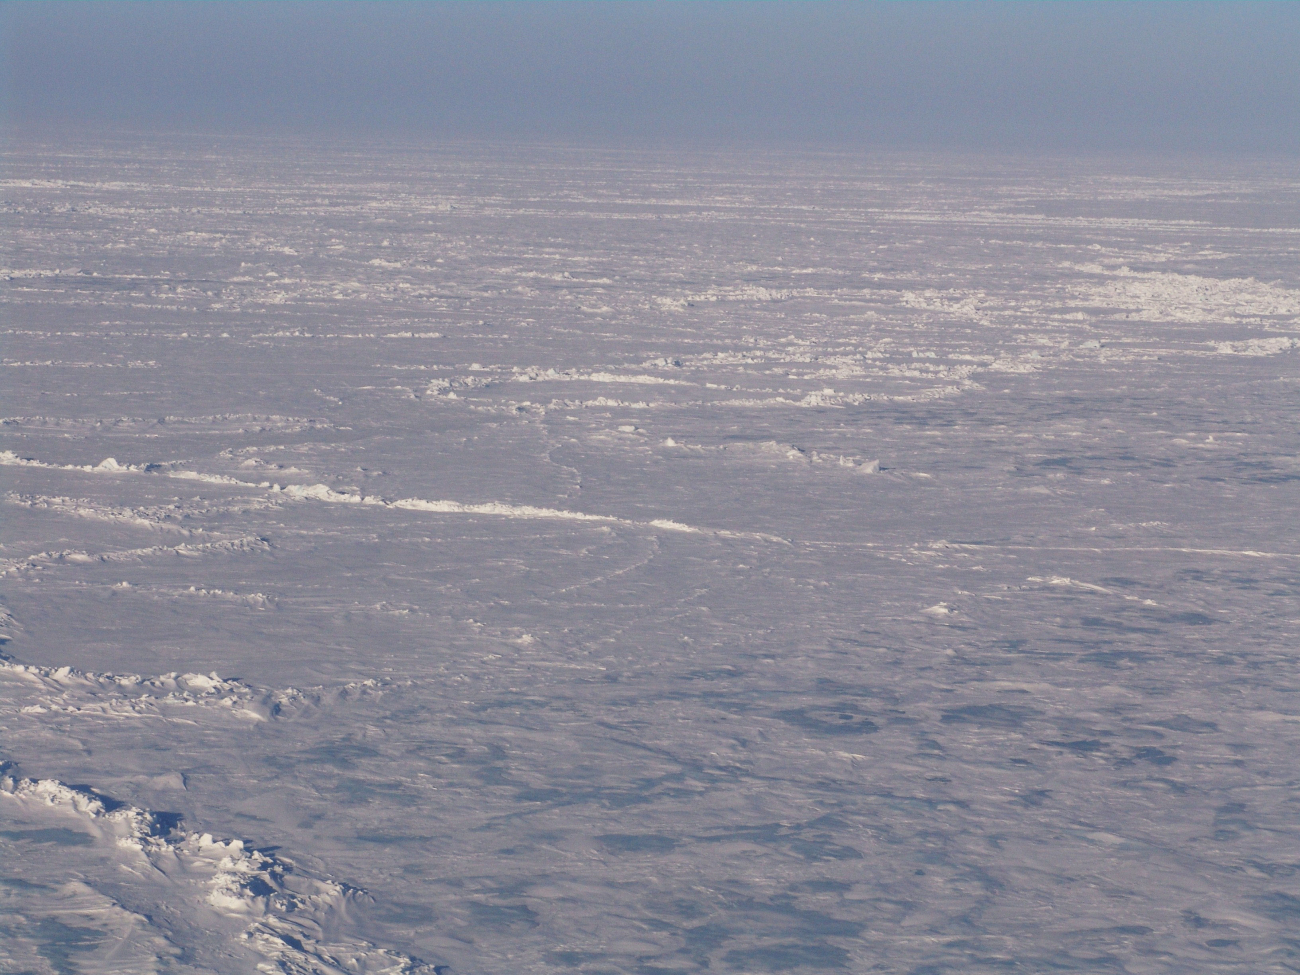 Ice ridges extending to the horizon